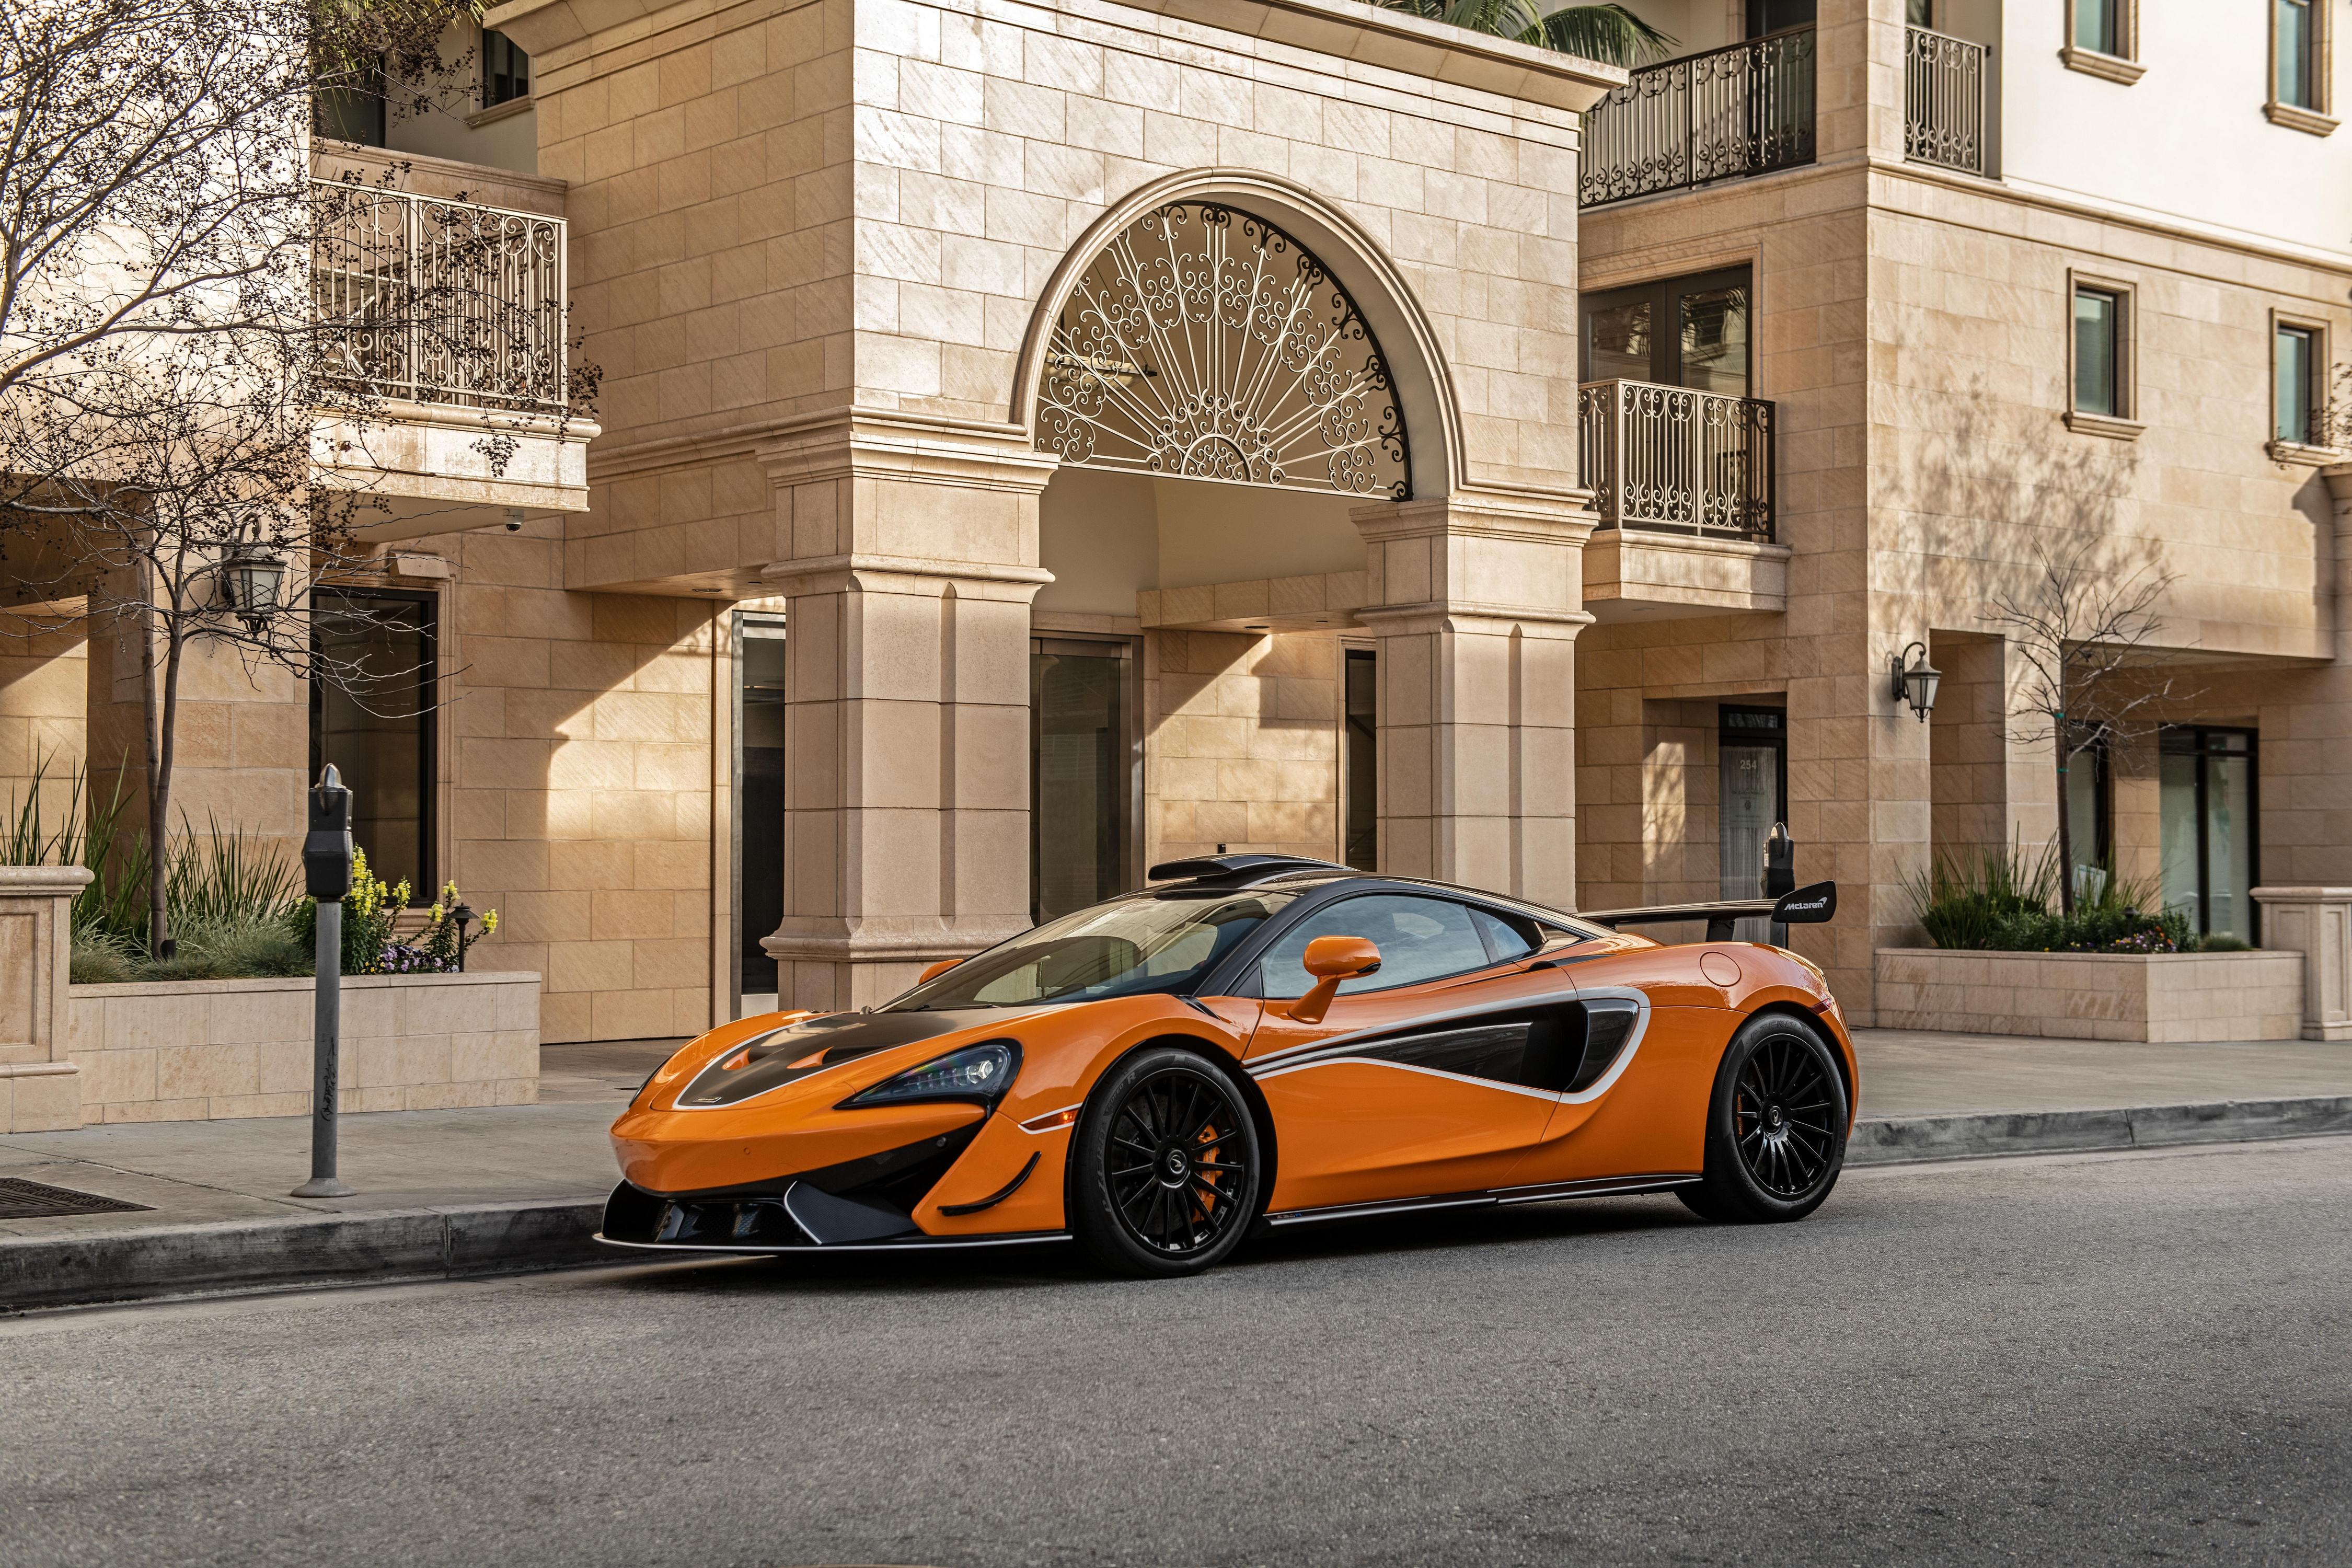 Images McLaren 620R, 2021 Orange auto Metallic 4500x3000 Cars automobile